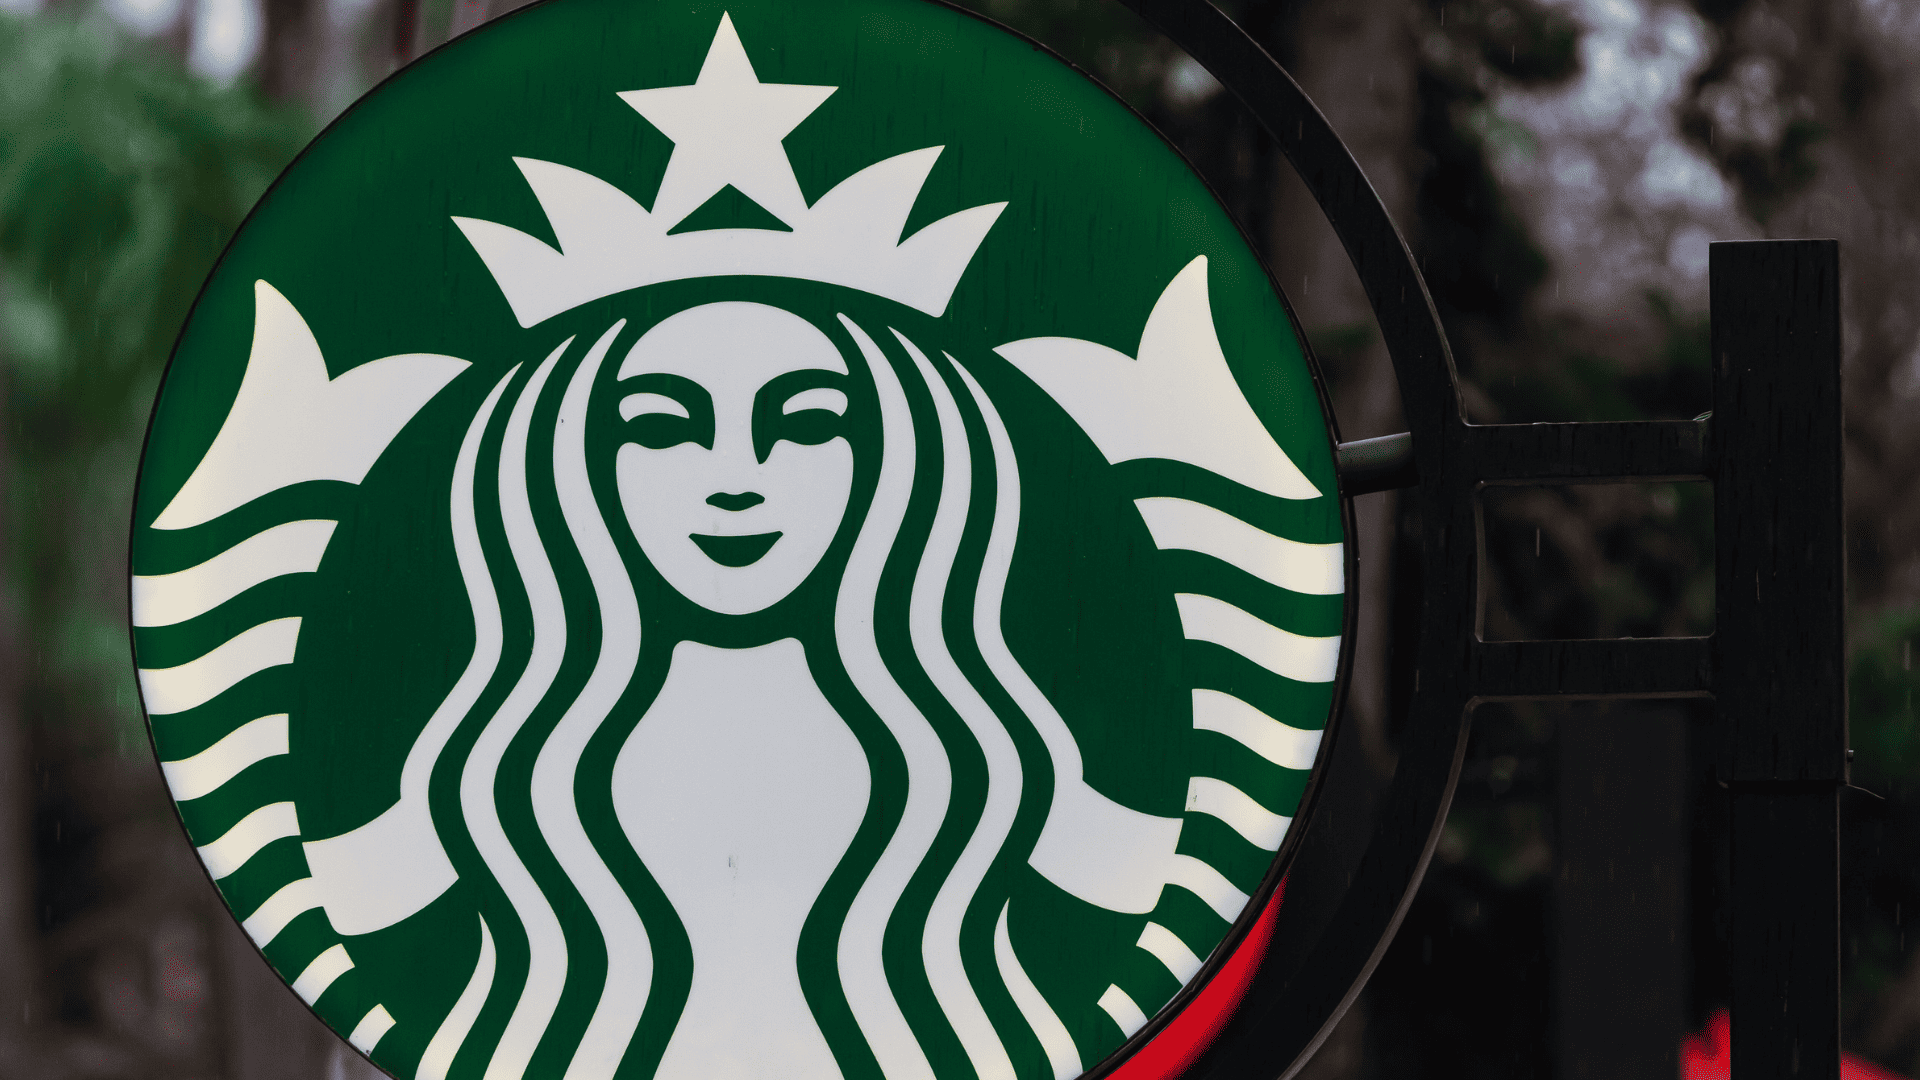 Starbucks recalls mugs